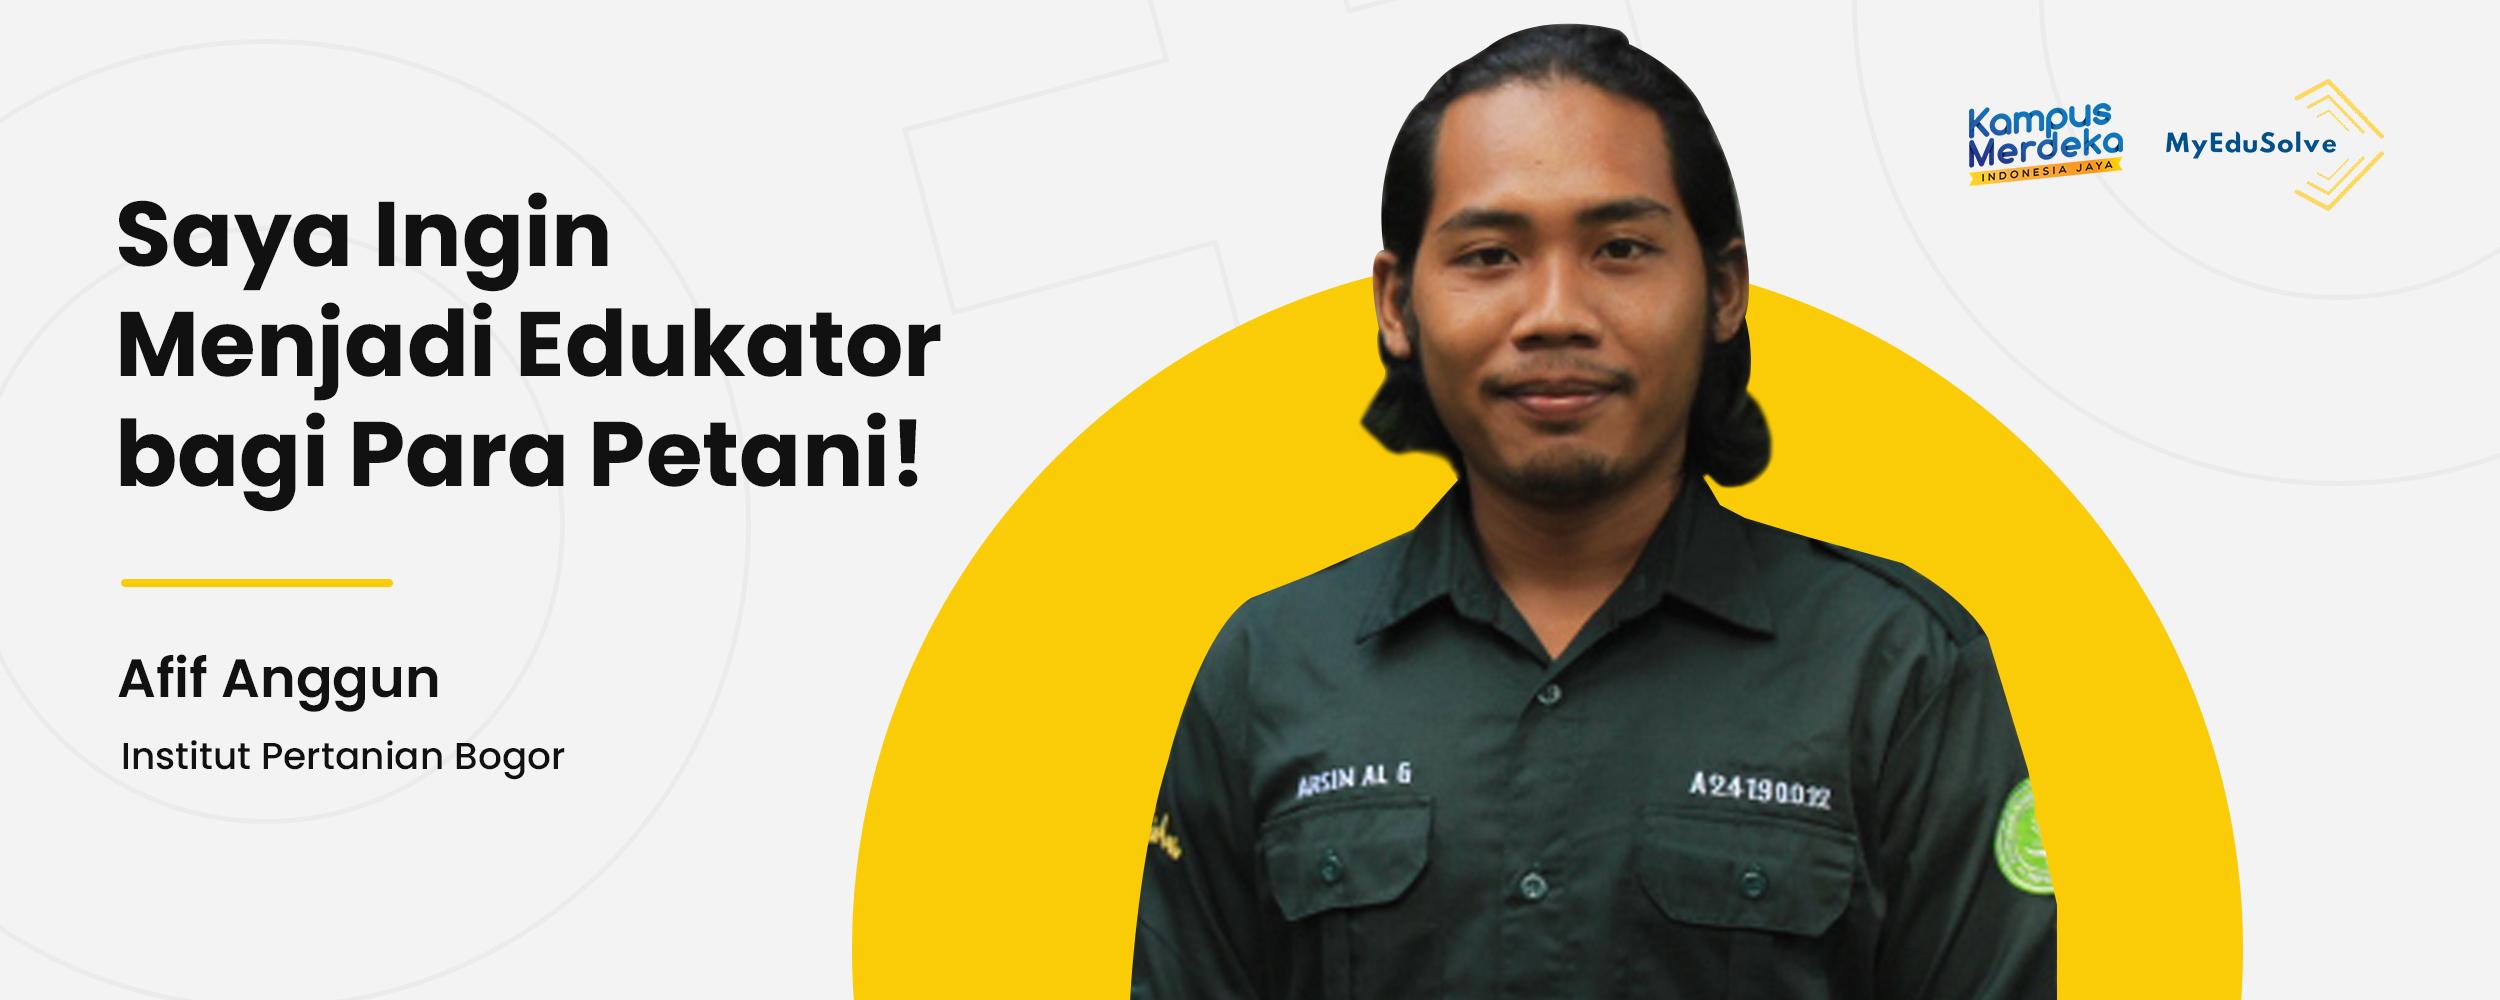 Bercita-cita Menjadi Agronomist, Afif Anggun: Saya Ingin Menjadi Edukator bagi Para Petani! cover